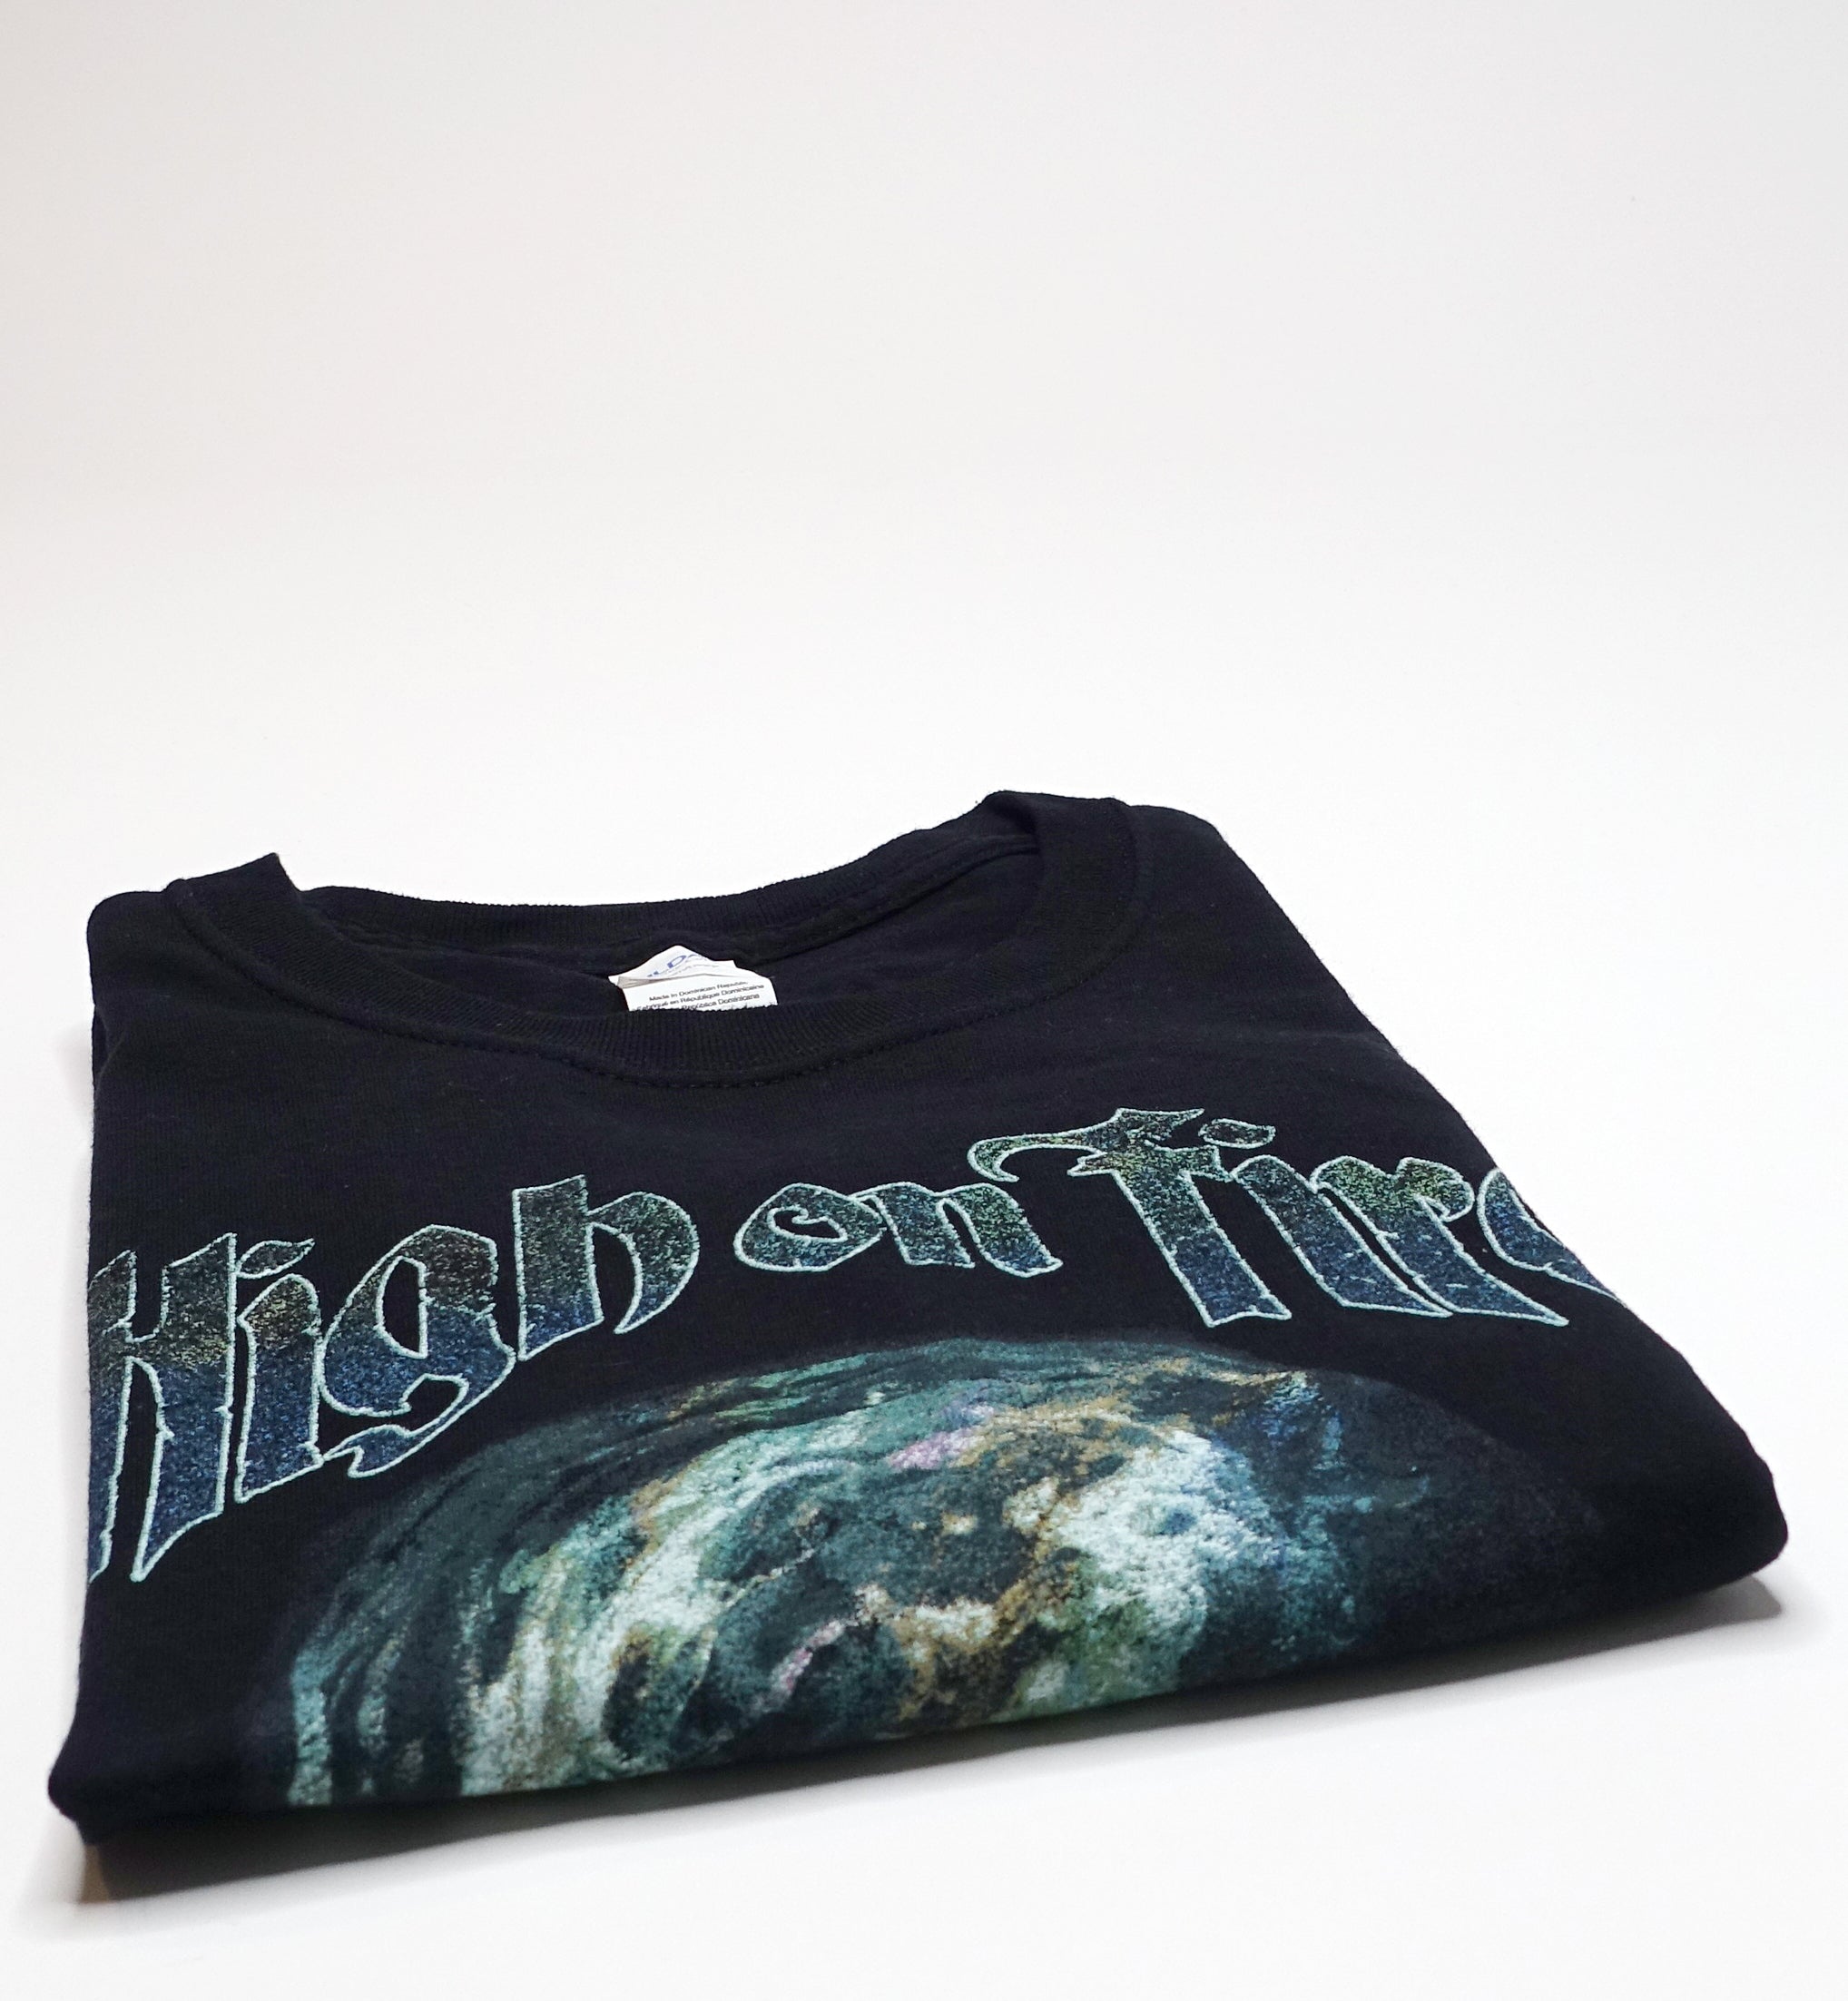 High On Fire - Skull Tour Shirt Size XL